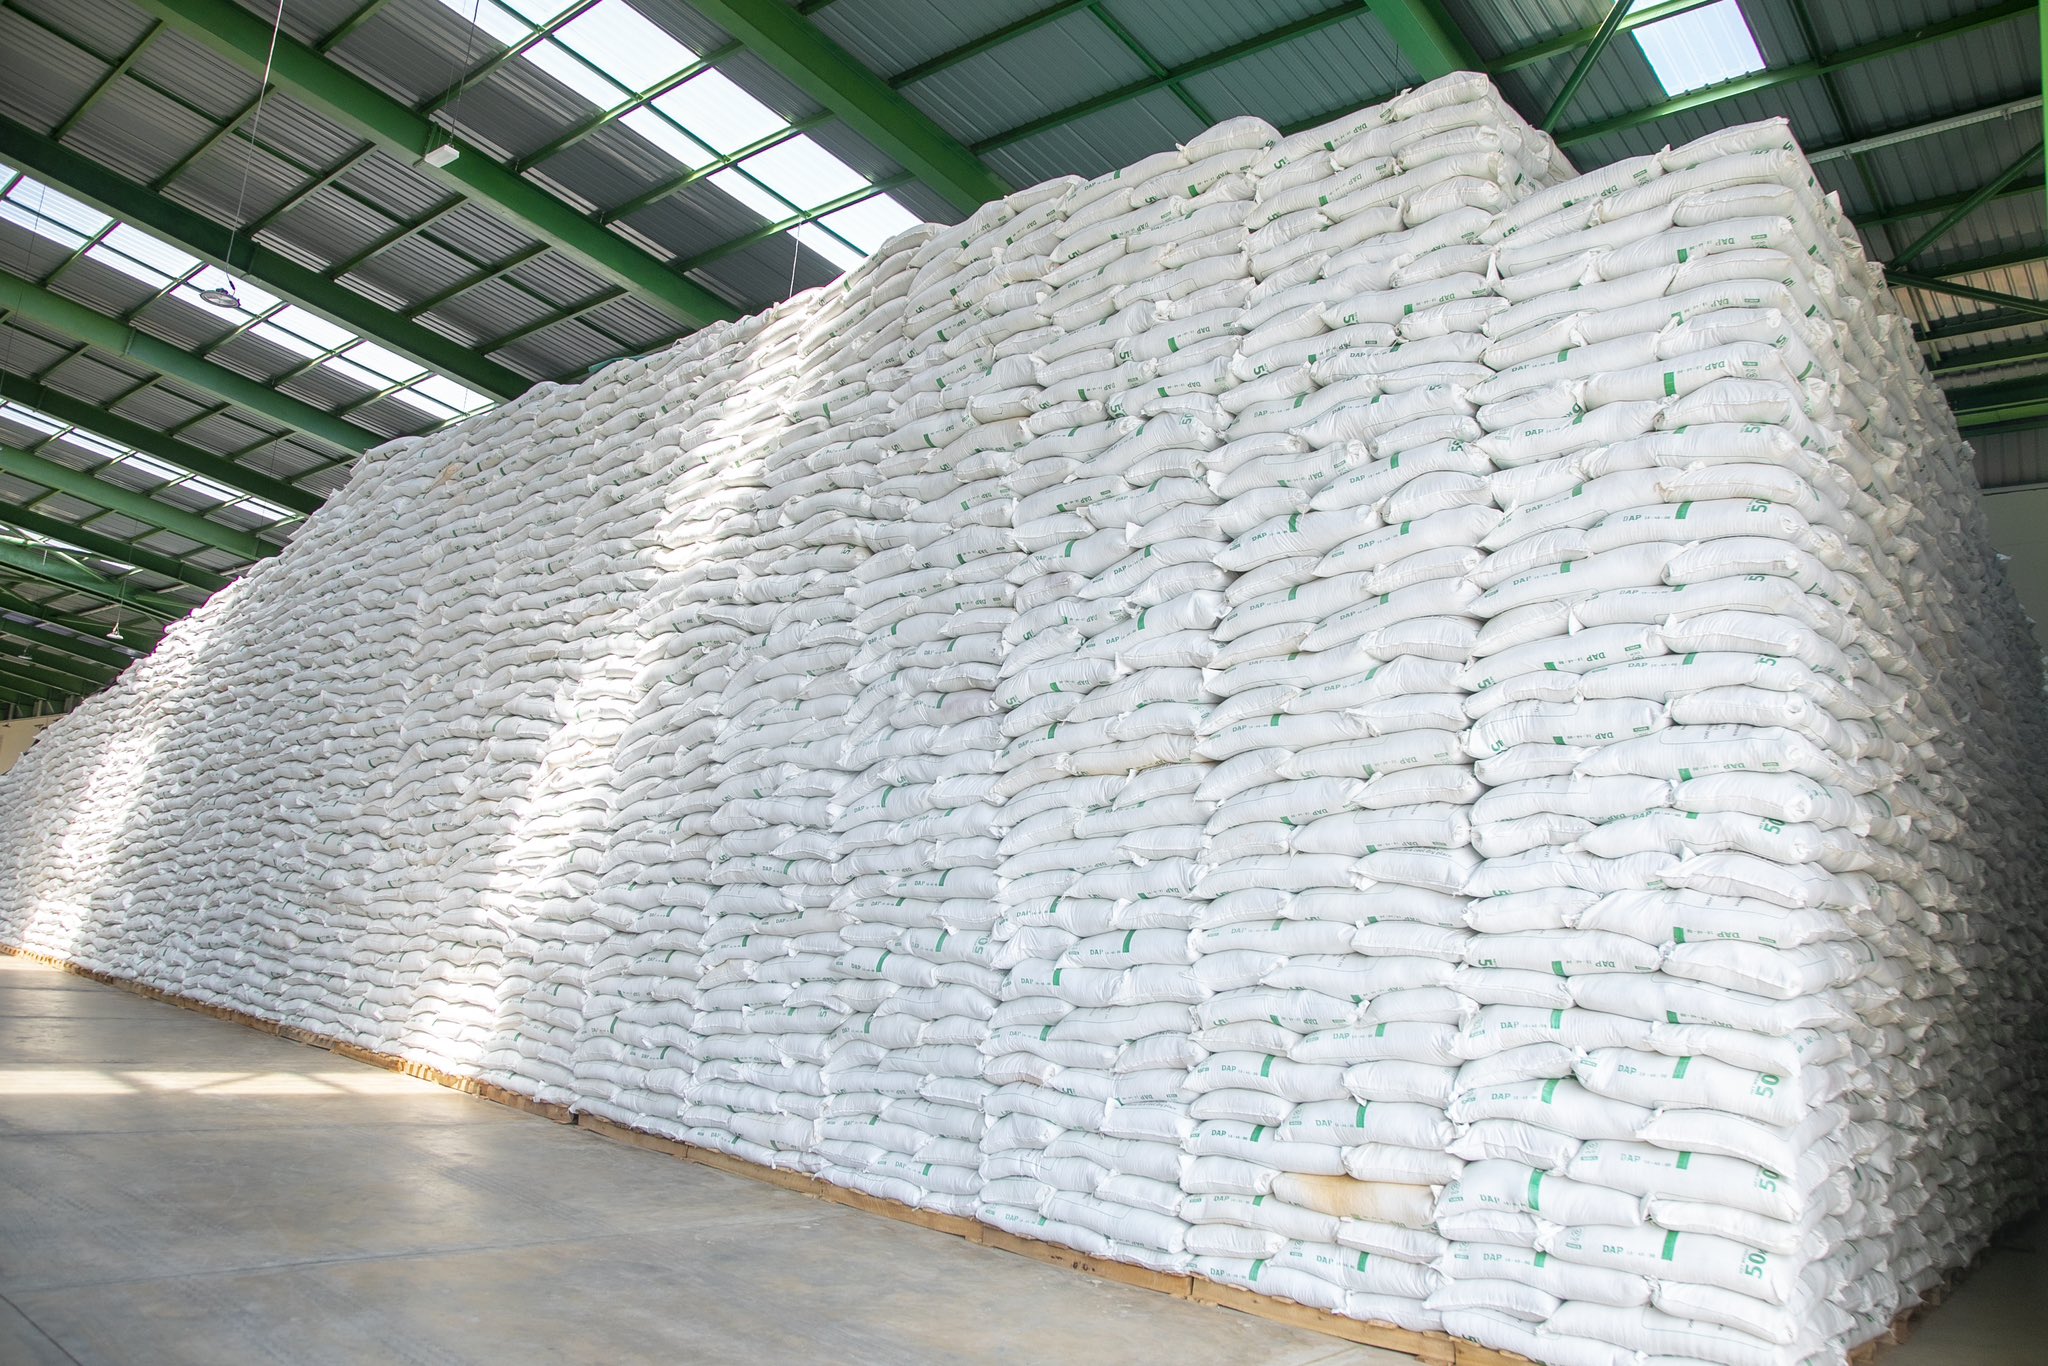 Rwanda aims to cut fertilizer imports burden